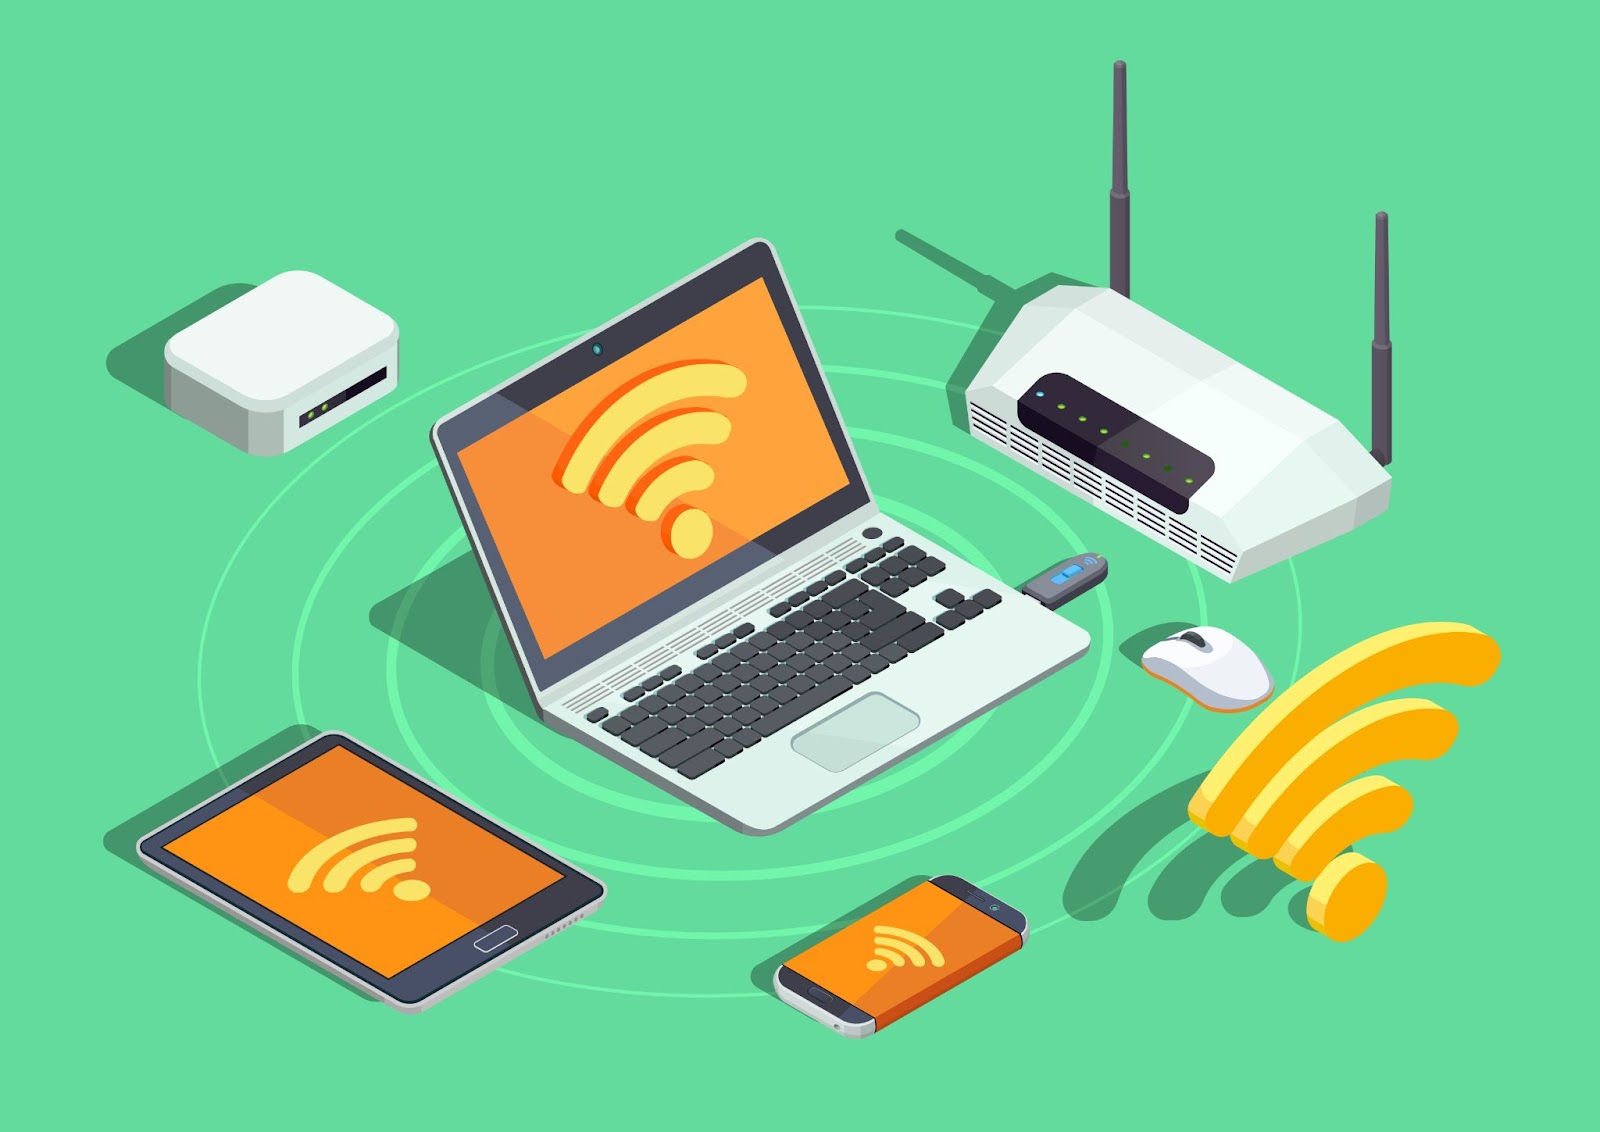 Dicas Infalíveis para um Wi-Fi rápido e estável mesmo na sua sala mais escondida